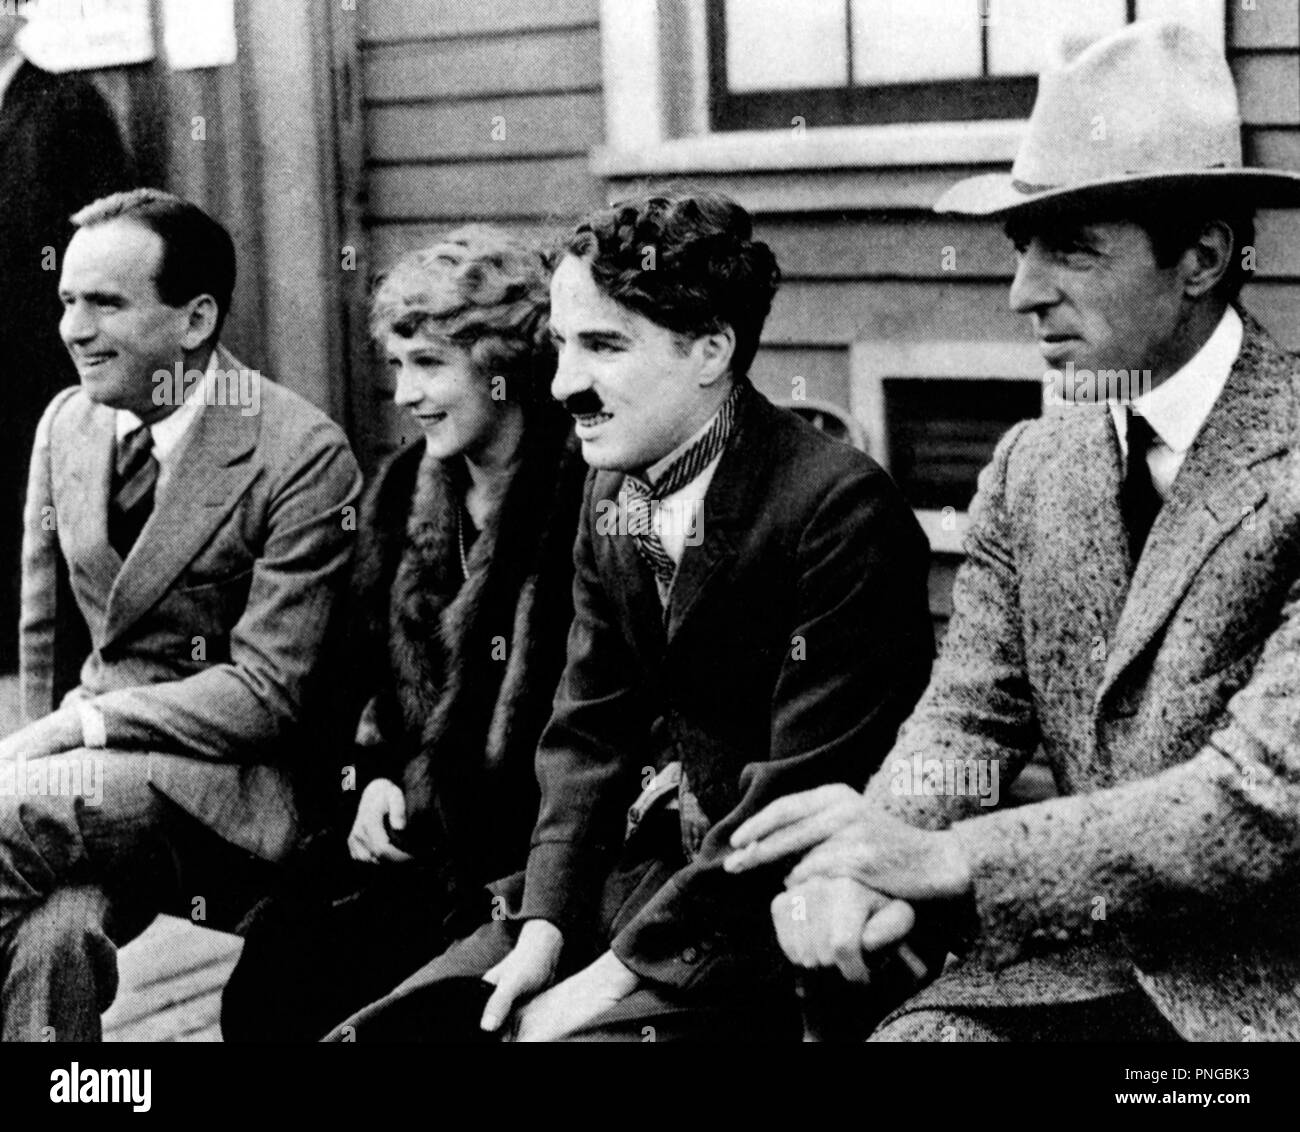 DOUGLAS FAIRBANKS; MARY PICKFORD; D. W. GRIFFITH; CHARLIE CHAPLIN. Stock Photo